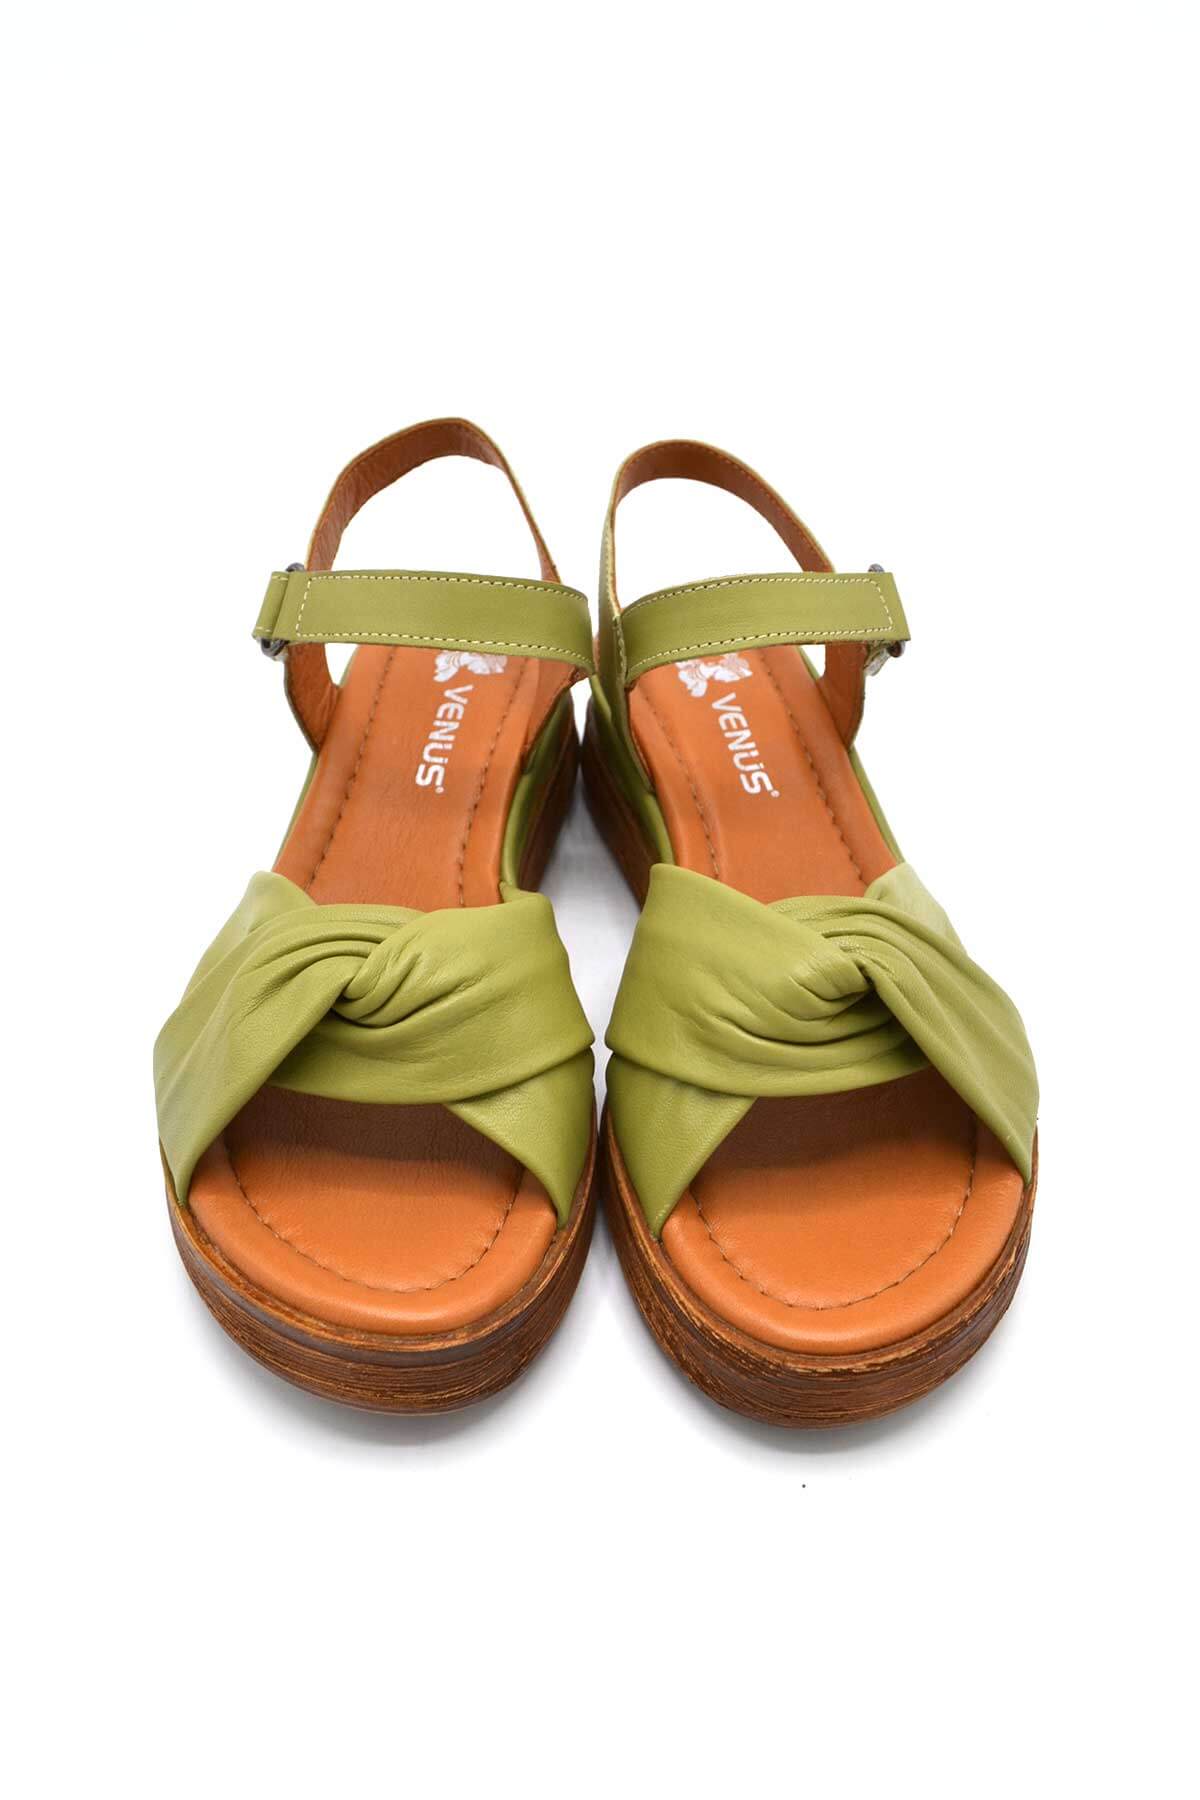 Kadın Comfort Deri Sandalet Yeşil 2216403Y